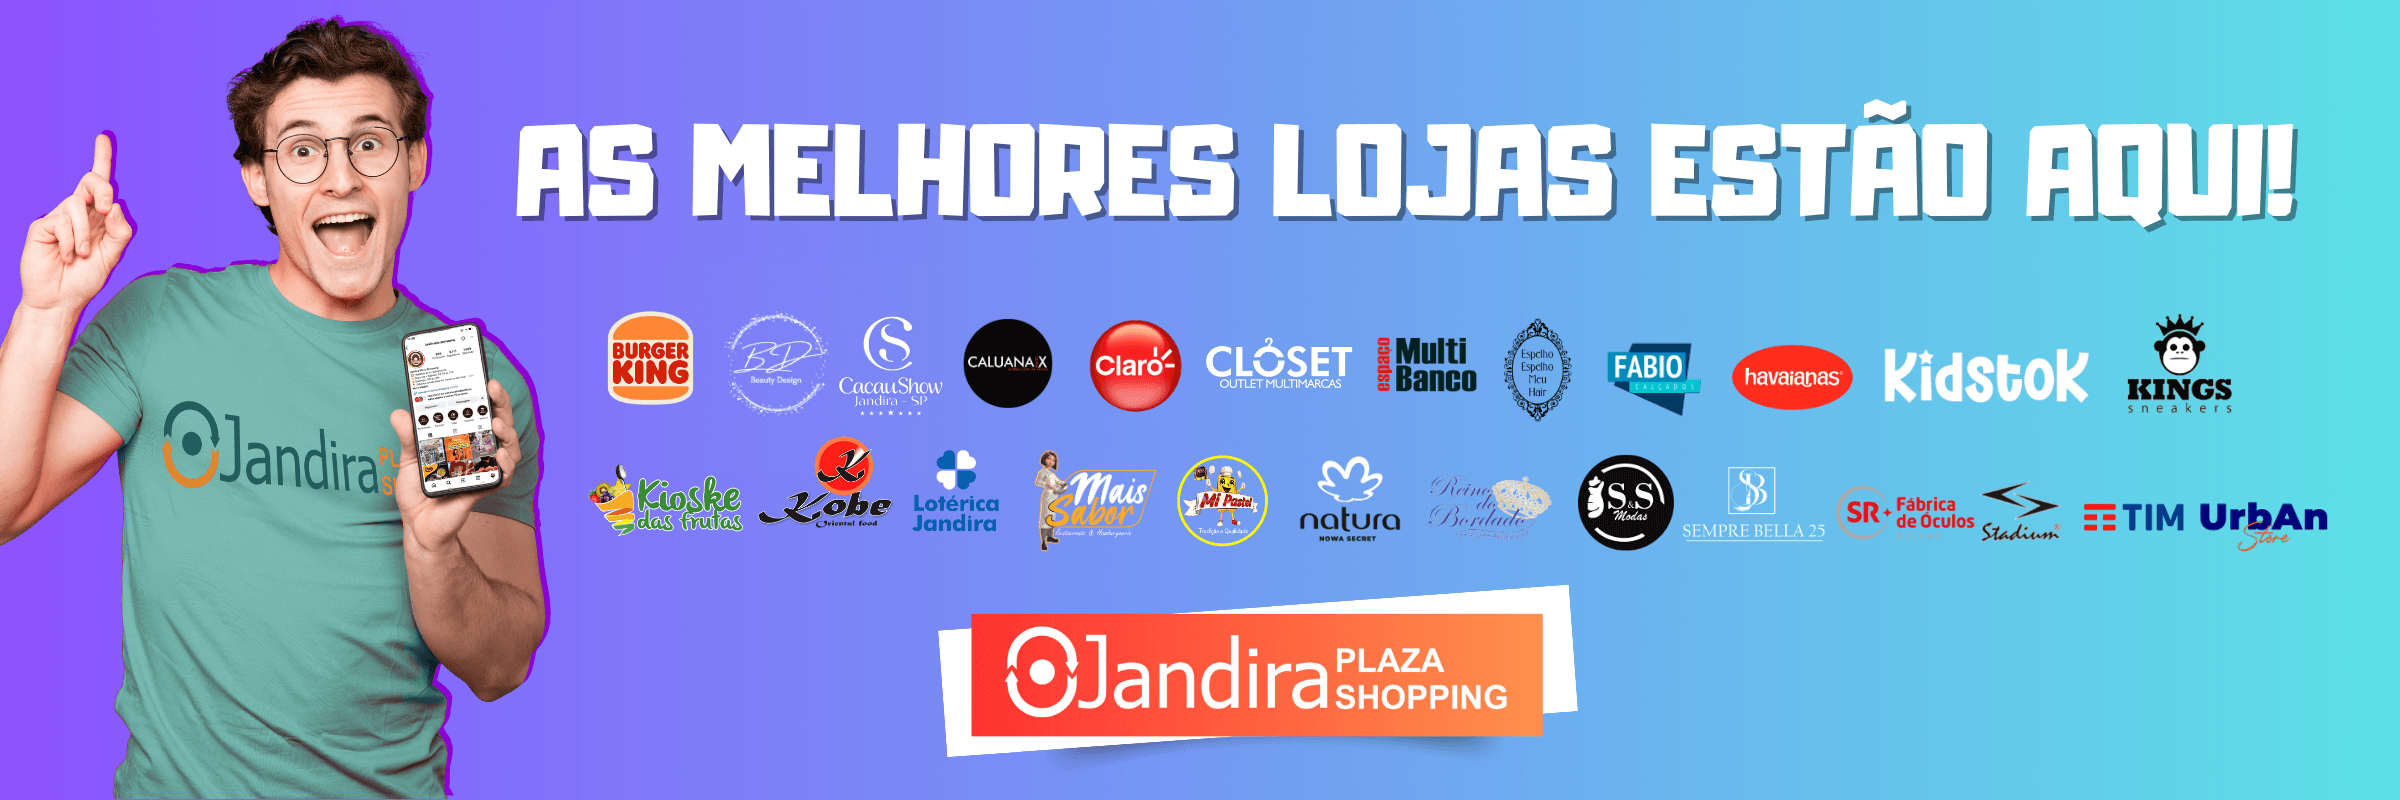 As melhores lojas você encontra no Jandira Plaza Shopping!